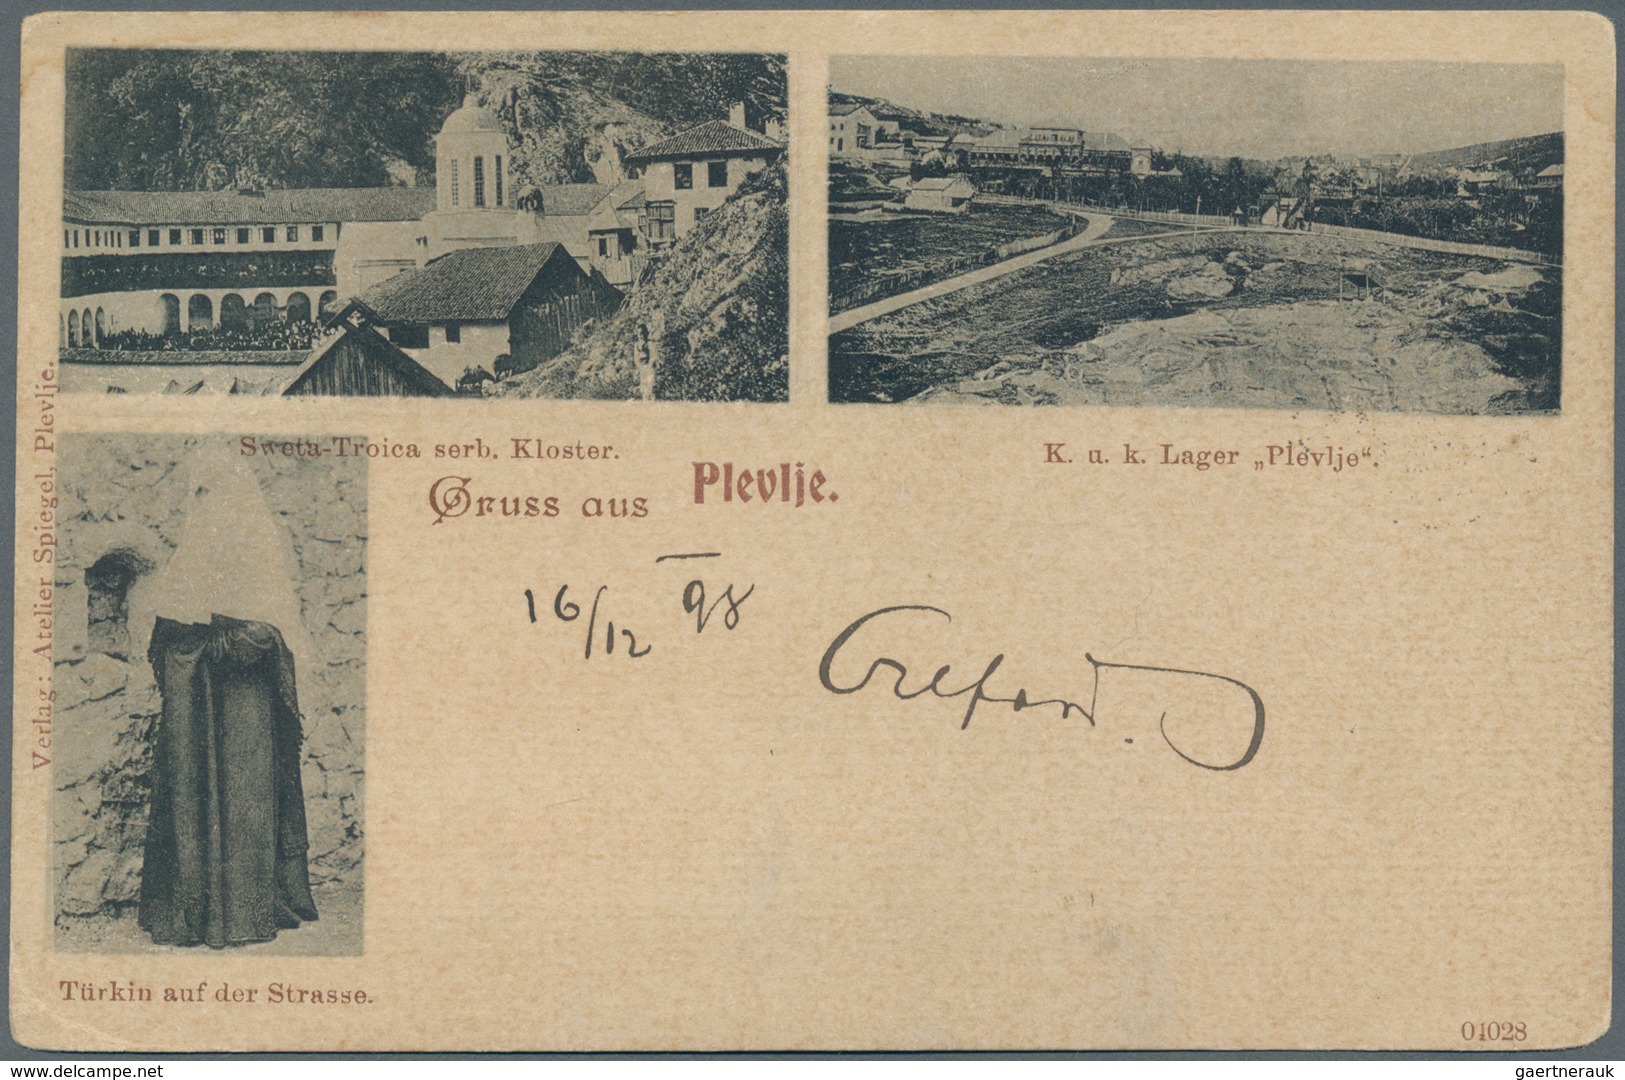 Bosnien Und Herzegowina (Österreich 1879/1918): 1898, Multi-view “Gruss Aus Plevlje” Picture Postcar - Bosnien-Herzegowina